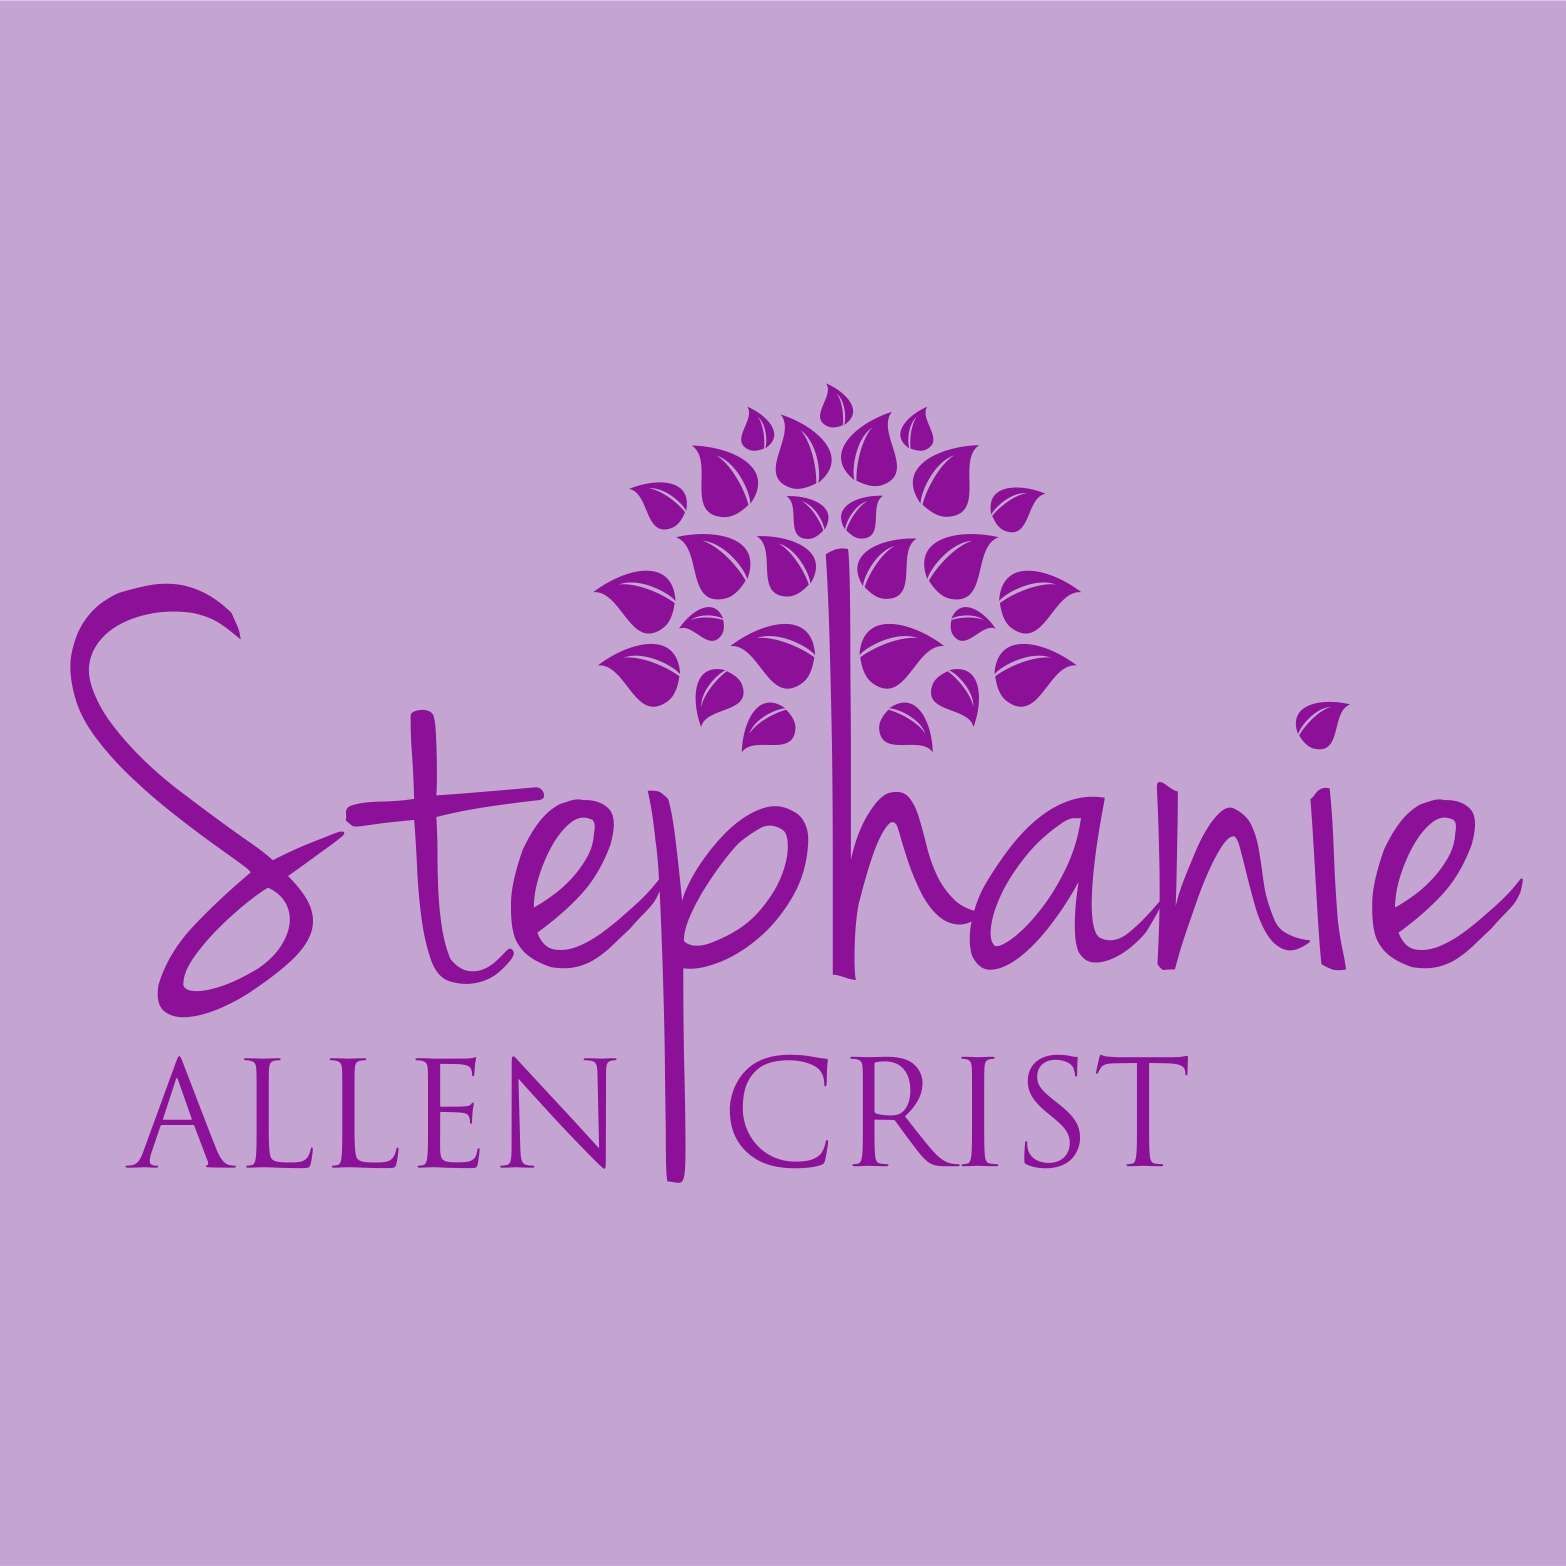 Stephanie Allen Crist